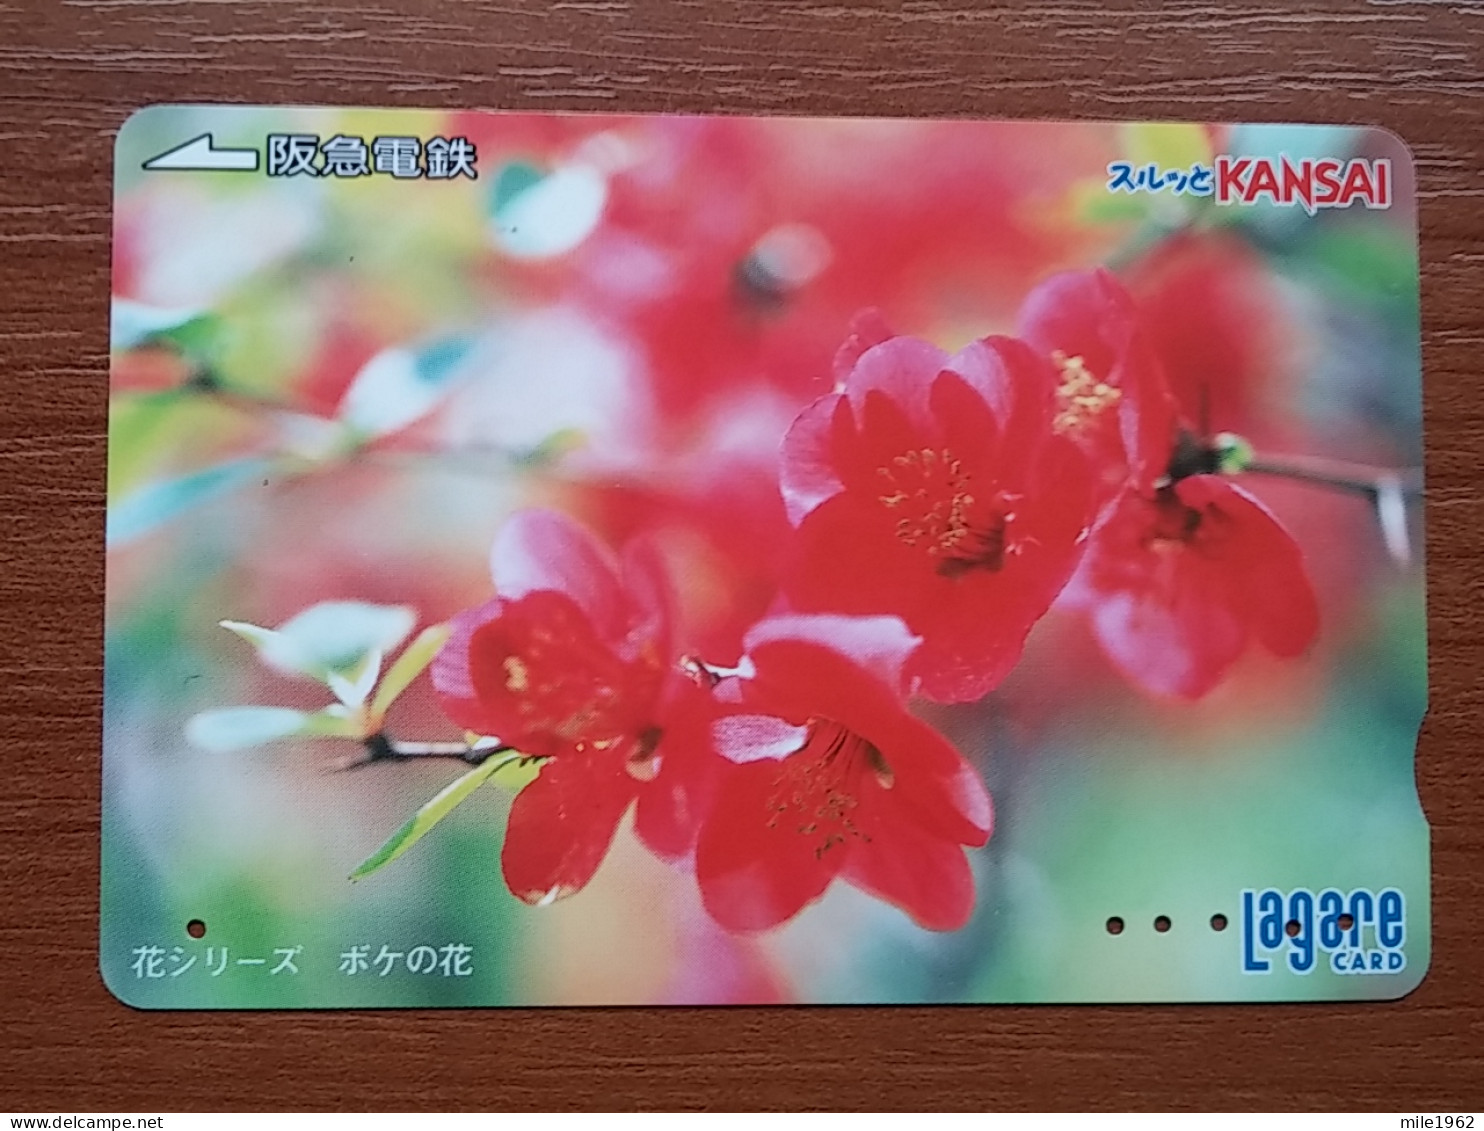 T-409 - JAPAN, Japon, Nipon, Carte Prepayee, Prepaid Card, Flower, Fleur - Bloemen